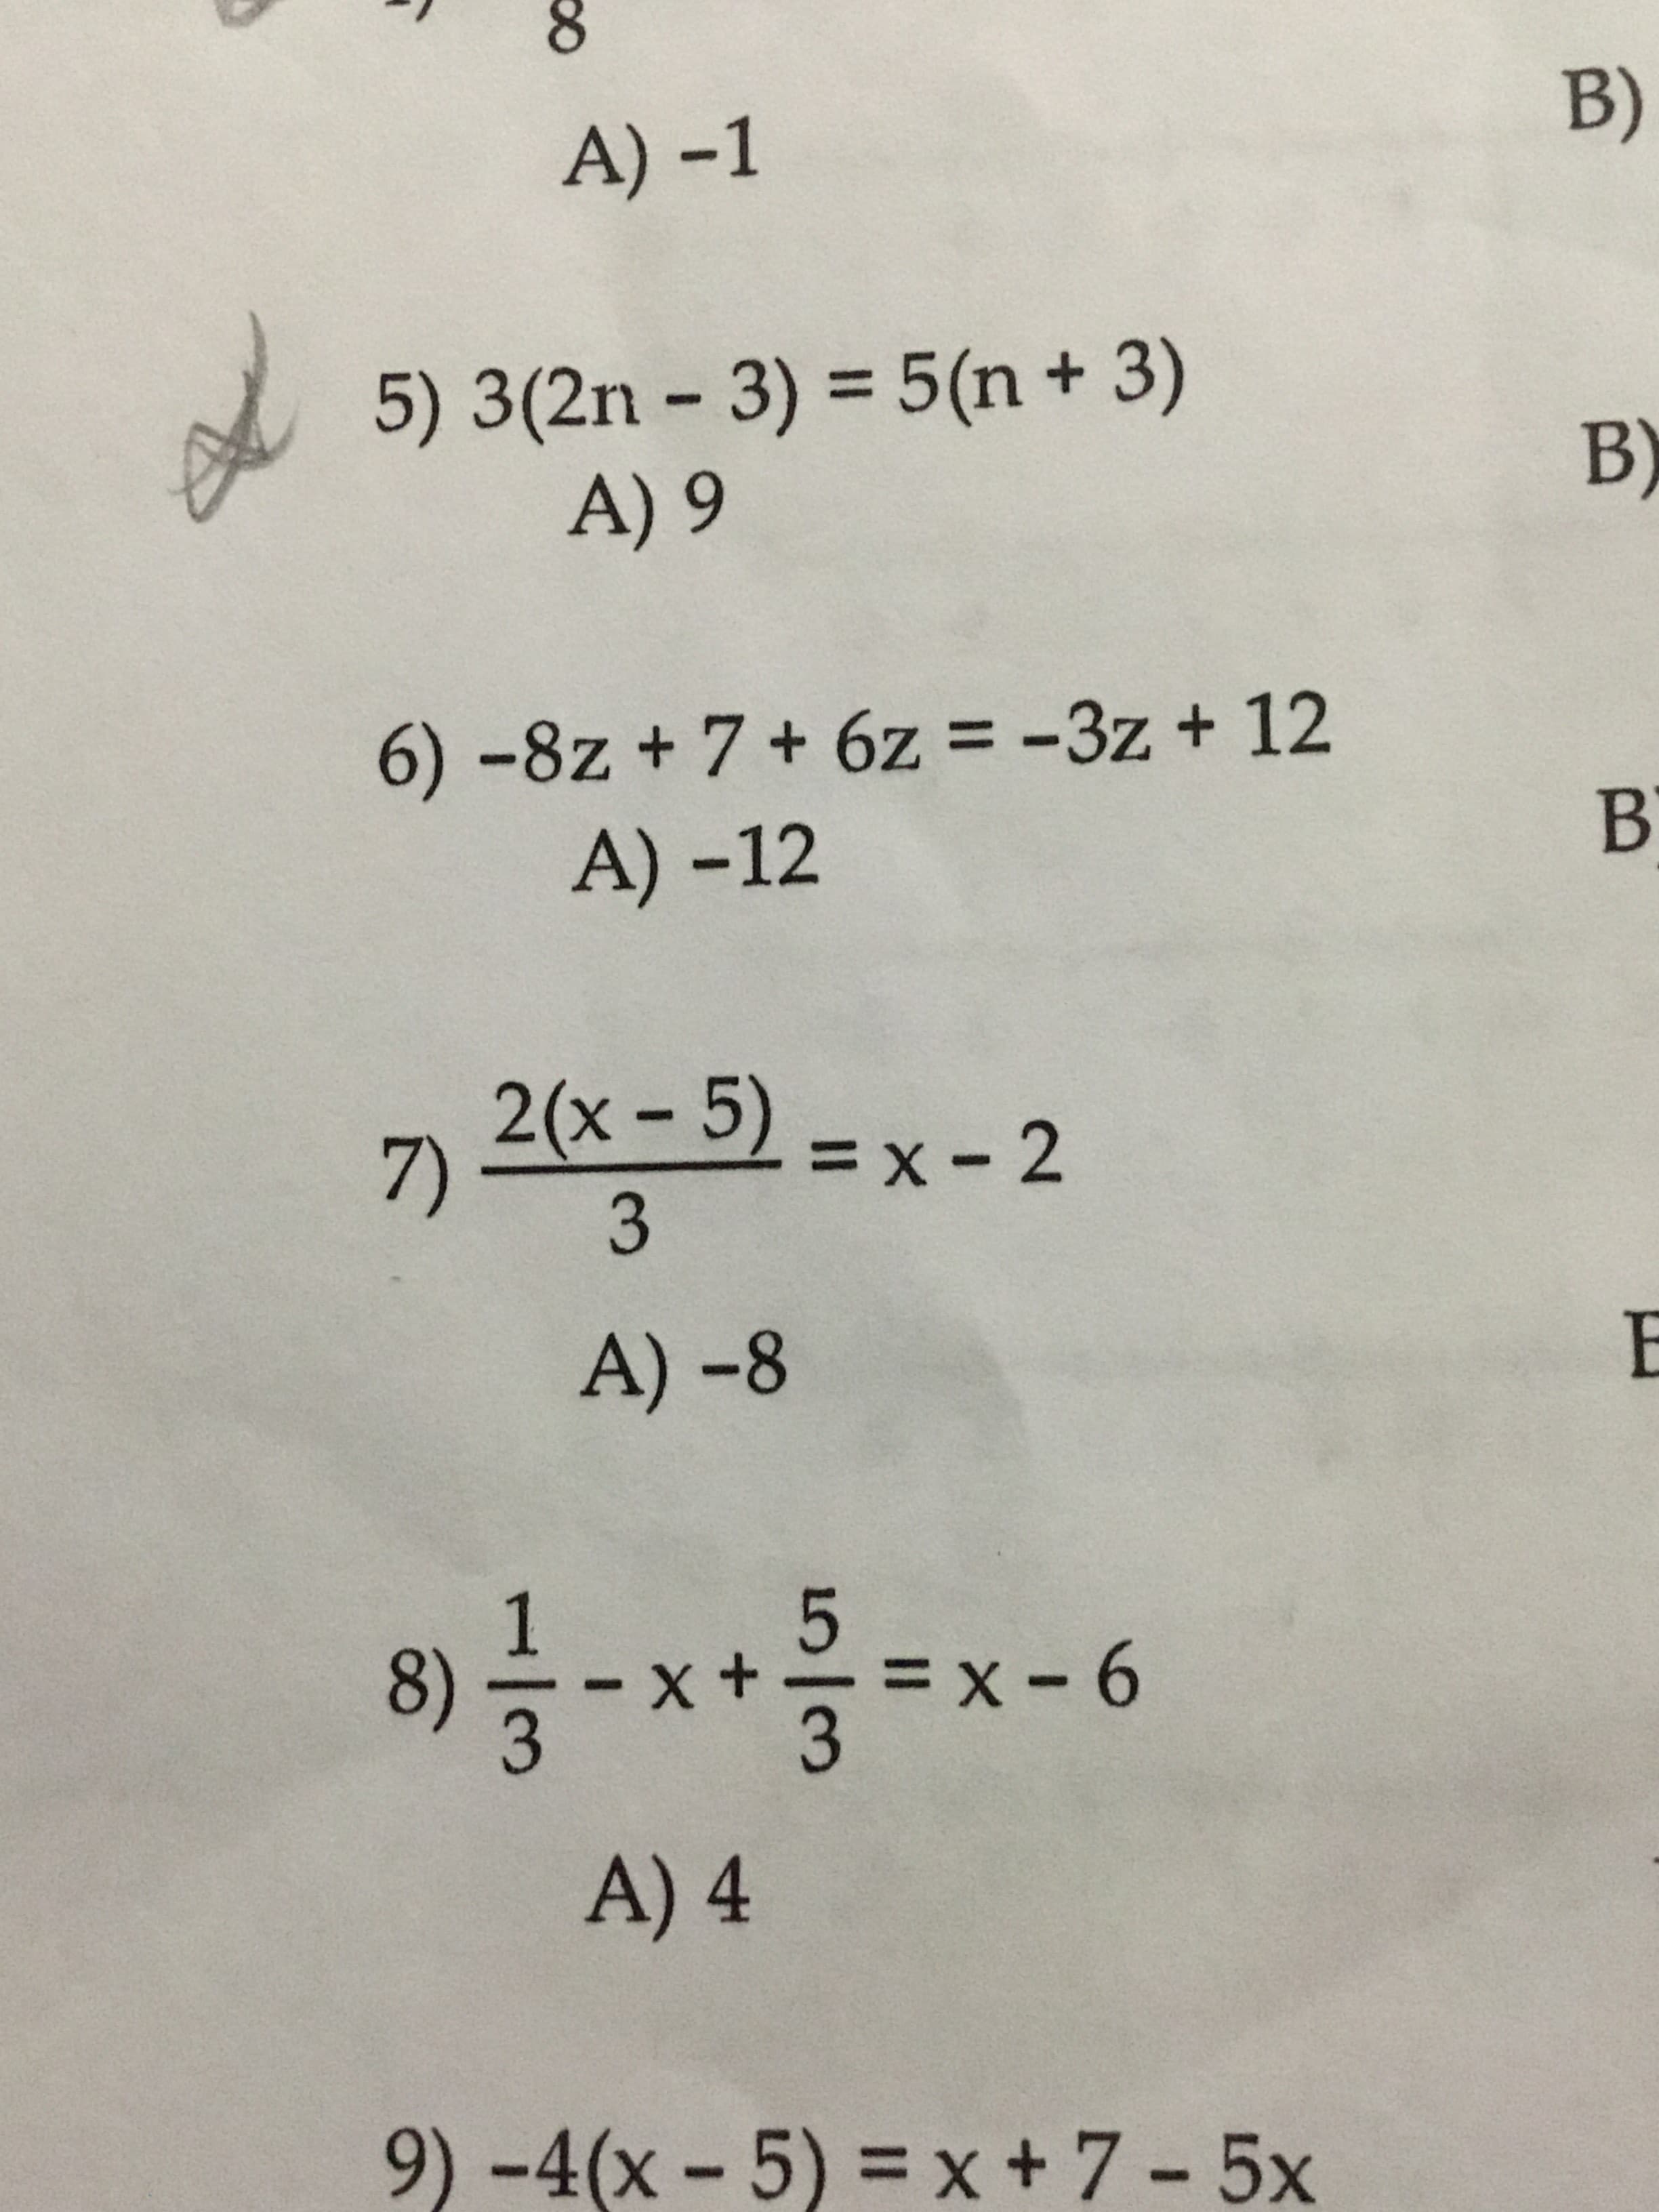 A) -1
B)
5) 3(2n-3) = 5(n + 3)
A) 9
B)
A) -12
2(x-5)
7)
= x-2
A) -8
3
A) 4
9)-4(x-5) = x + 7-5x
